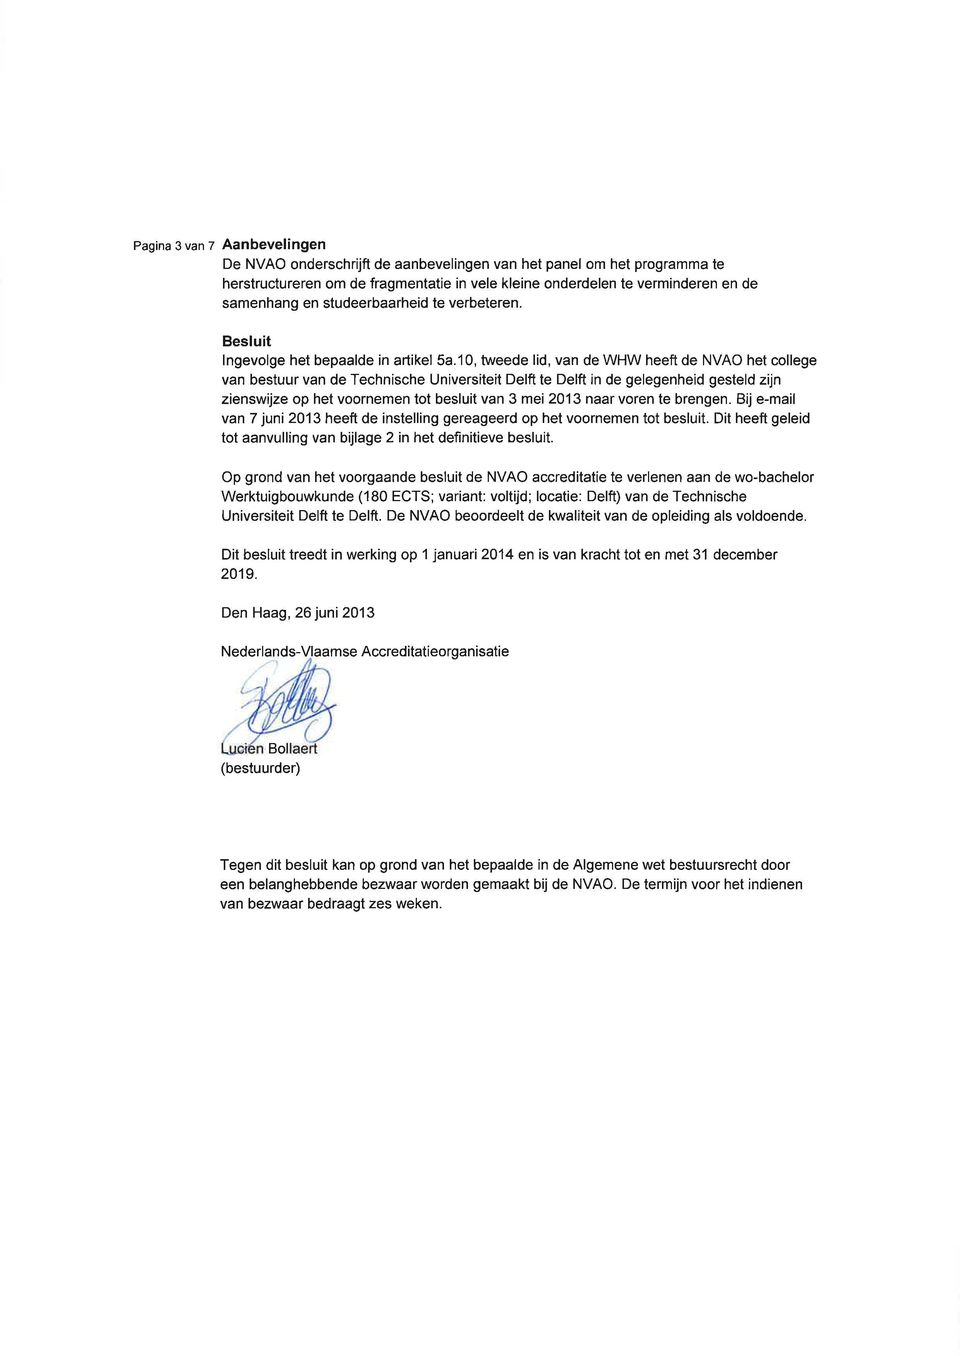 10, tweede lid, van de WHW heeft de NVAO het college van bestuur van de Technische Universiteit Delft te Delft in de gelegenheid gesteld zijn zienswijze op het voornemen tot besluit van 3 mei 2013